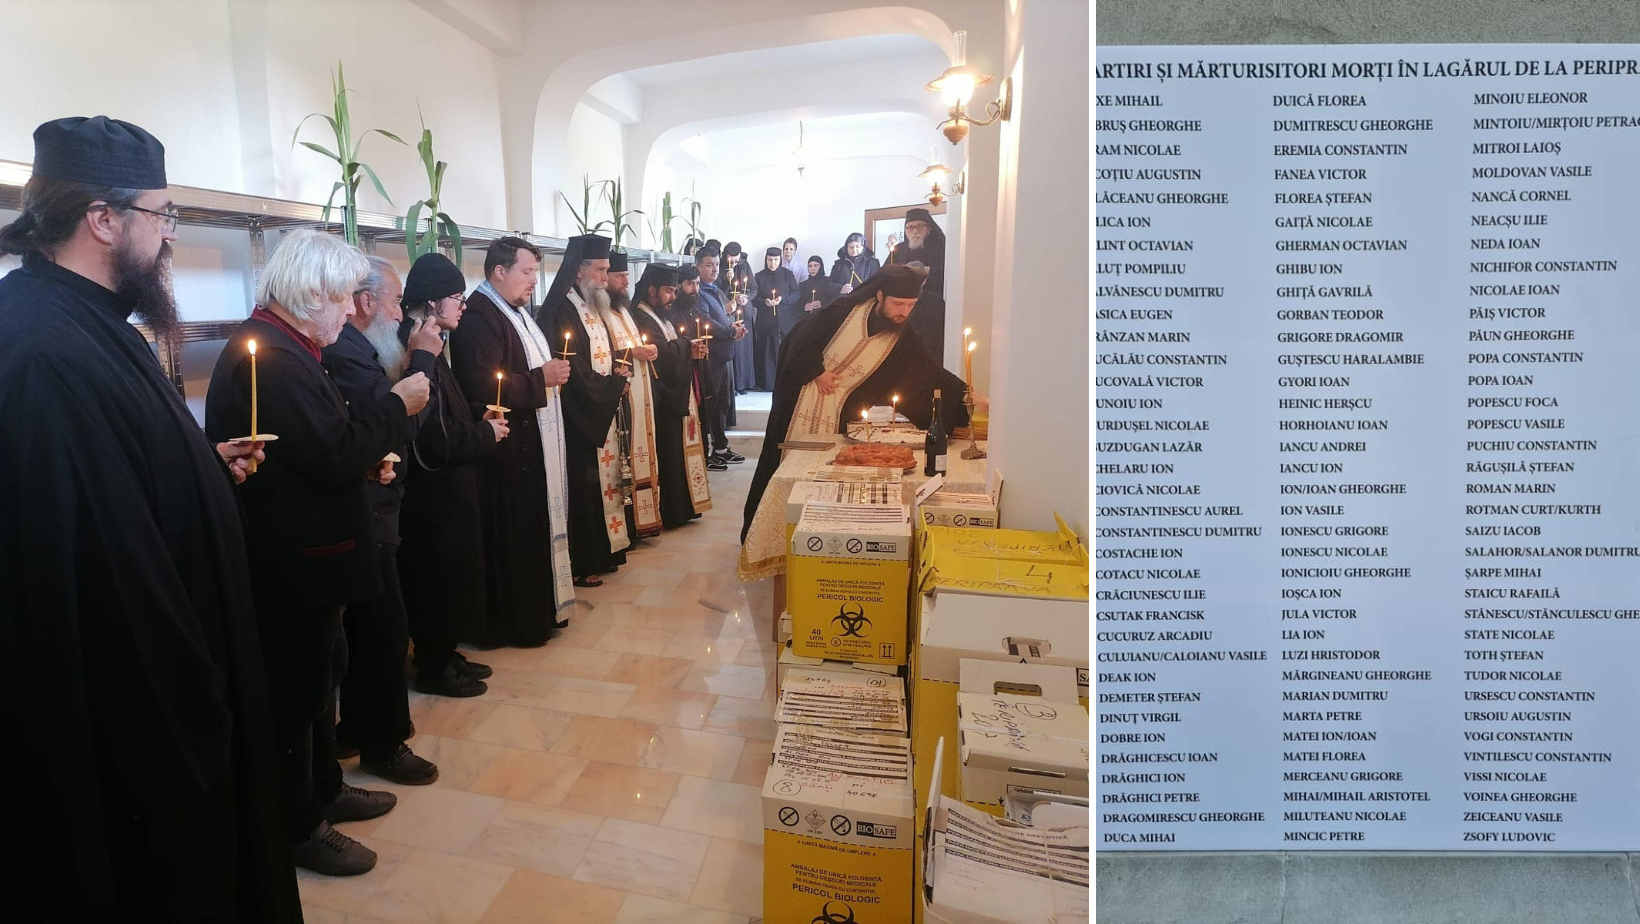 Osemintele a 70 de Mărturisitori ai credinței morți în lagărul de la Periprava, duse la Mănăstirea Dervent